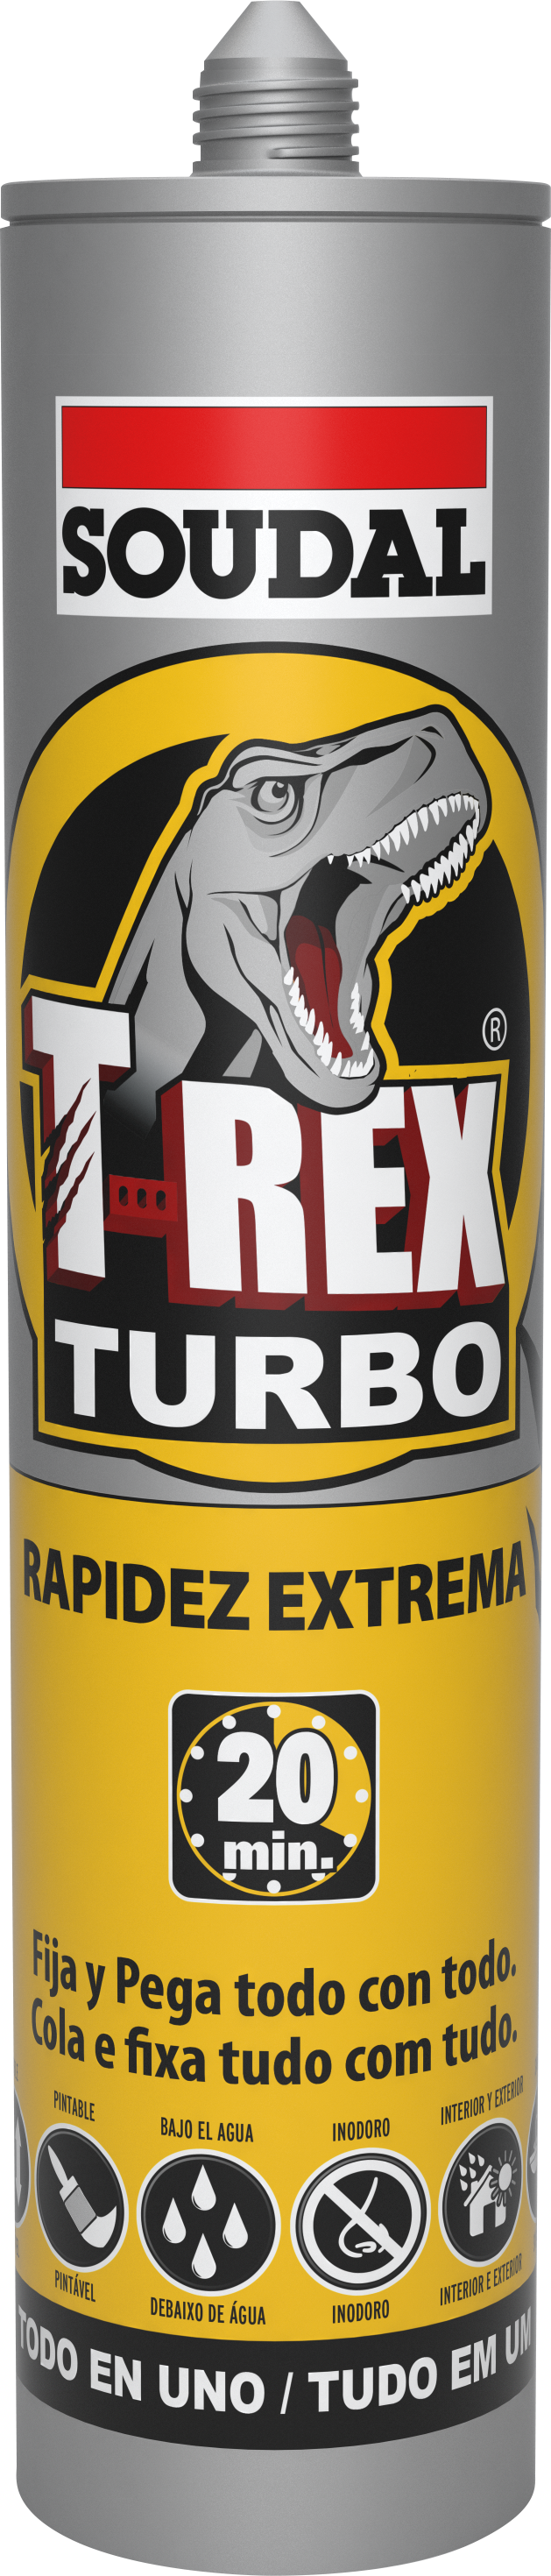 T-Rex Turbo